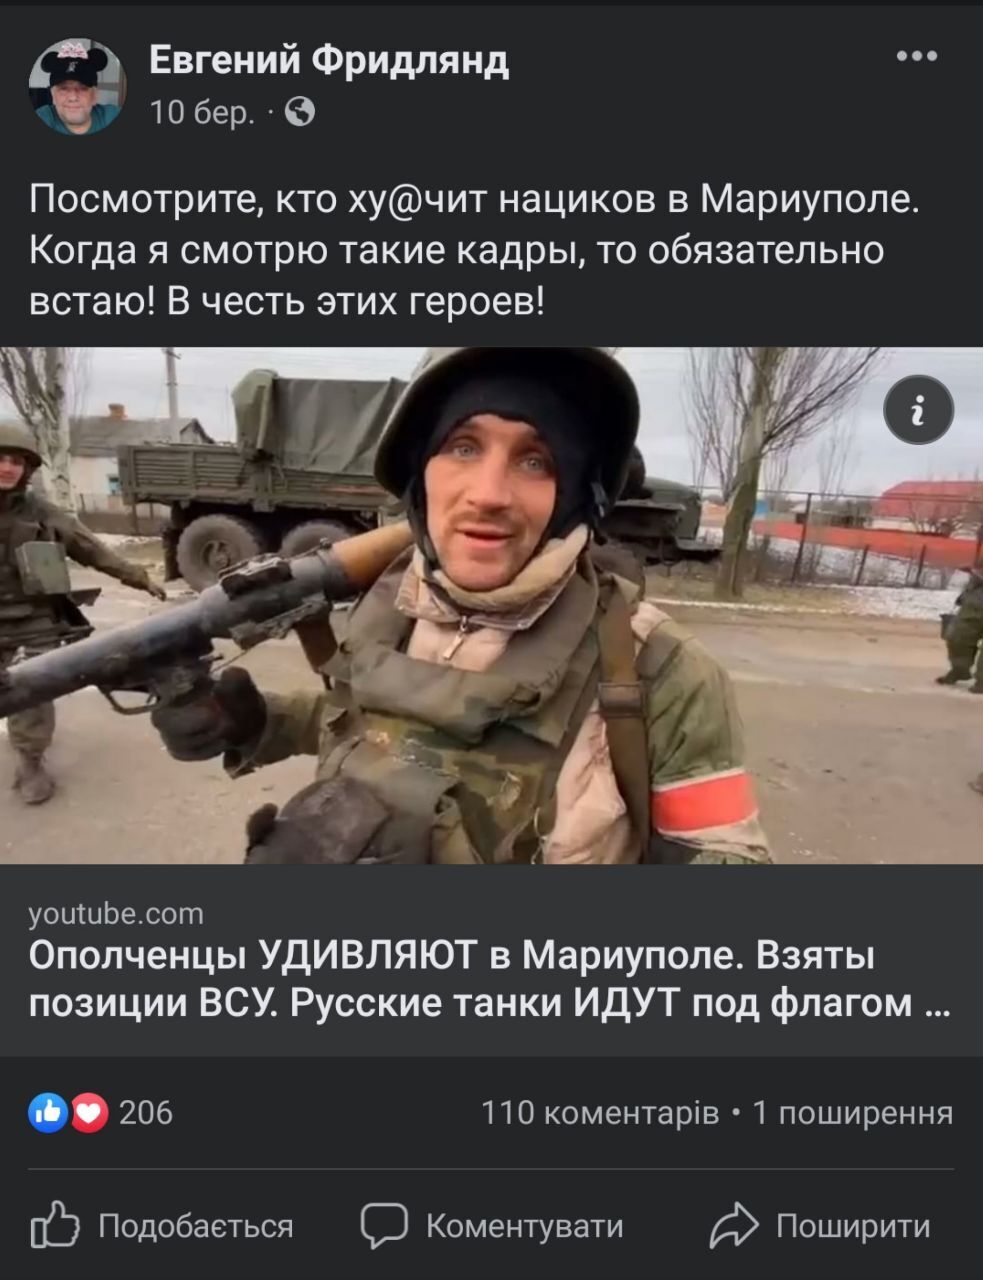 Фридлянд опубликовал видео, где якобы "храбрые" солдаты уничтожают "нациков" в Мариуполе